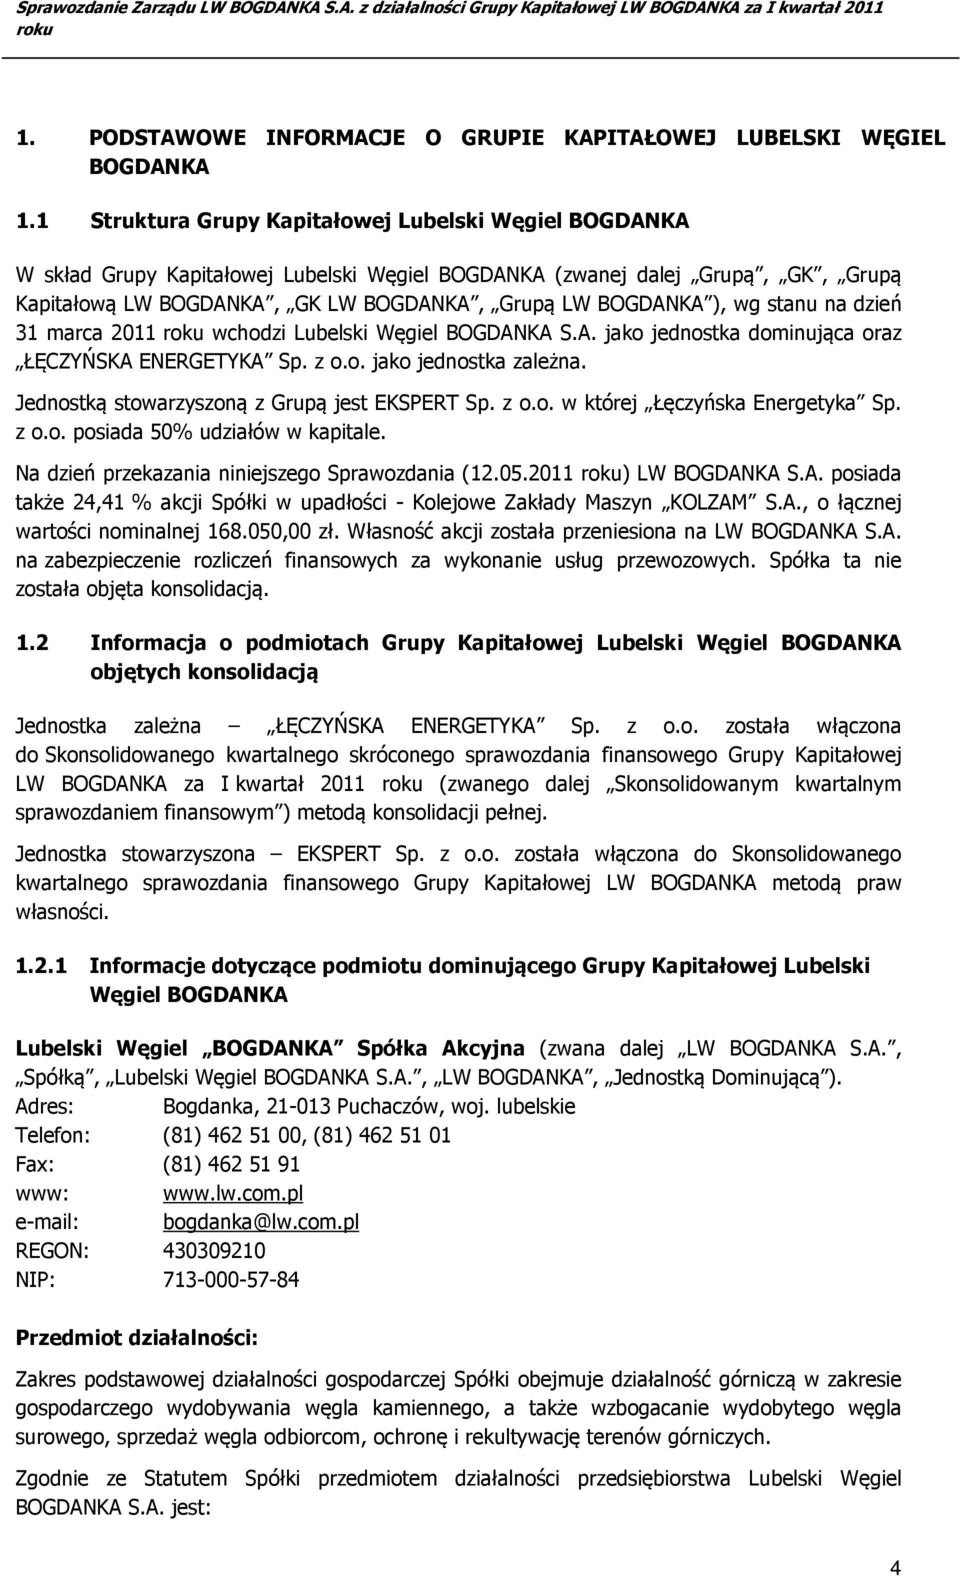 wg stanu na dzień 31 marca 2011 wchodzi Lubelski Węgiel BOGDANKA S.A. jako jednostka dominująca oraz ŁĘCZYŃSKA ENERGETYKA Sp. z o.o. jako jednostka zależna.